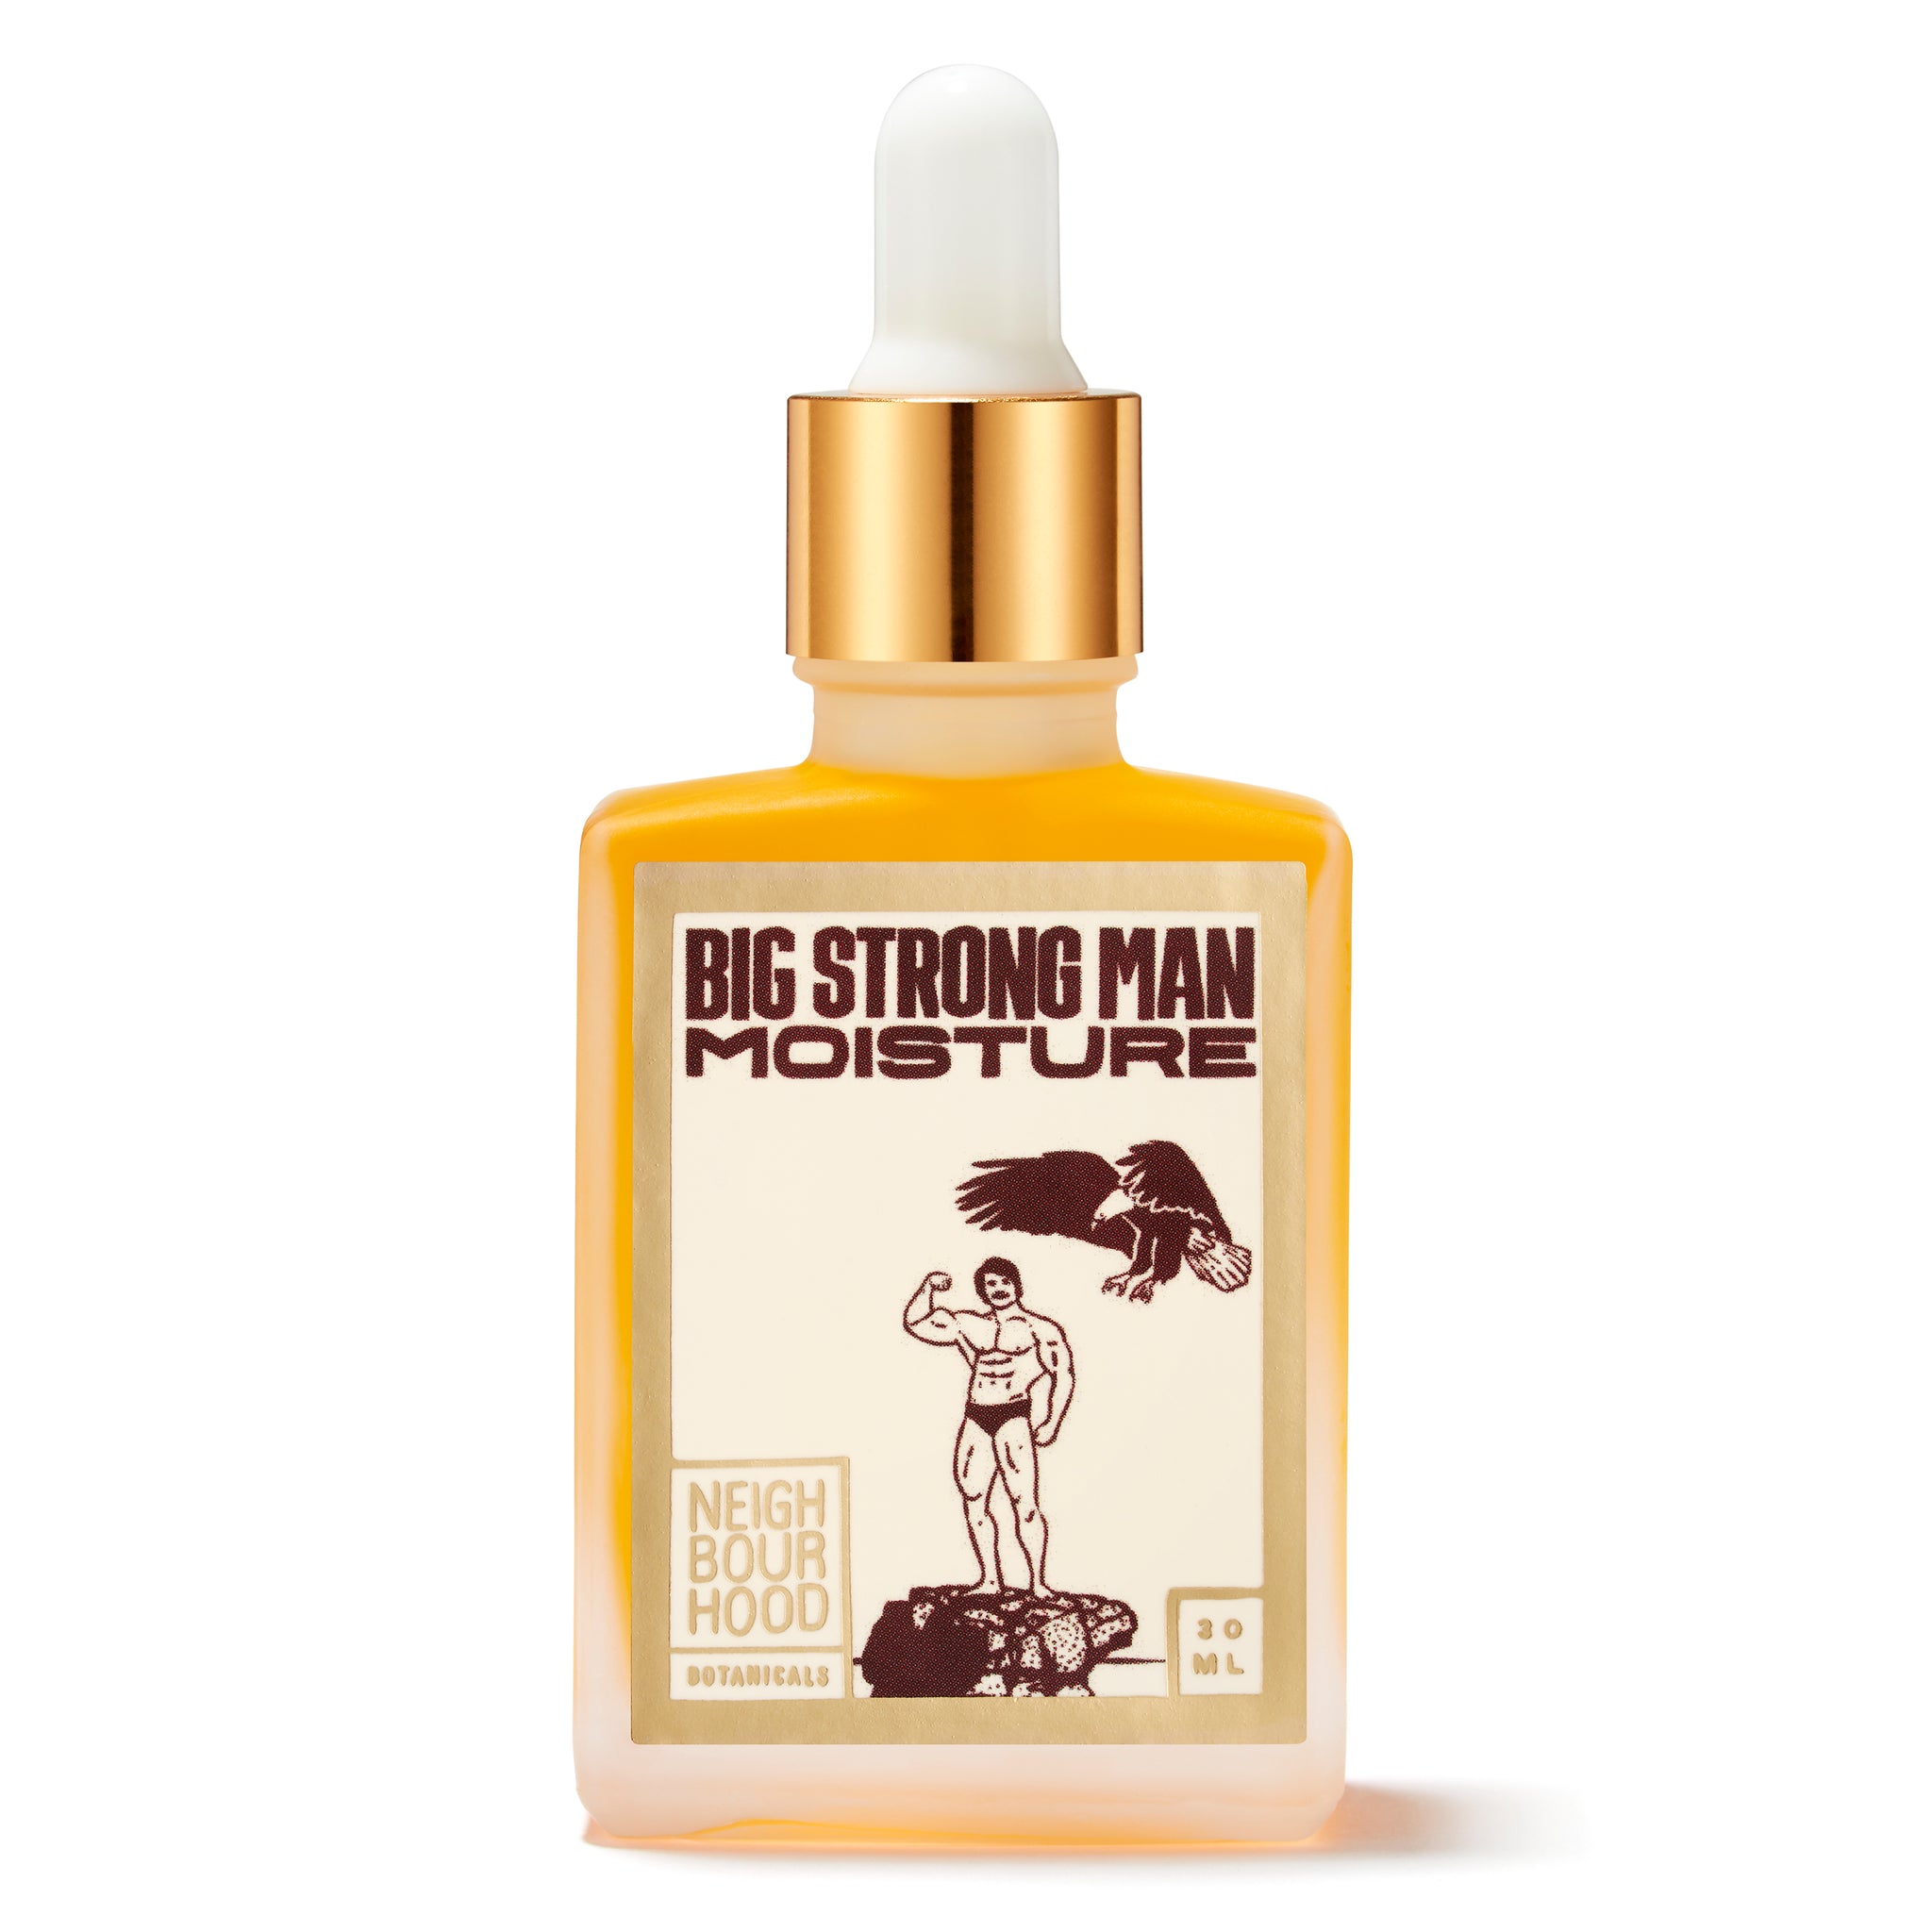 Big Strong Man Moisture Oil